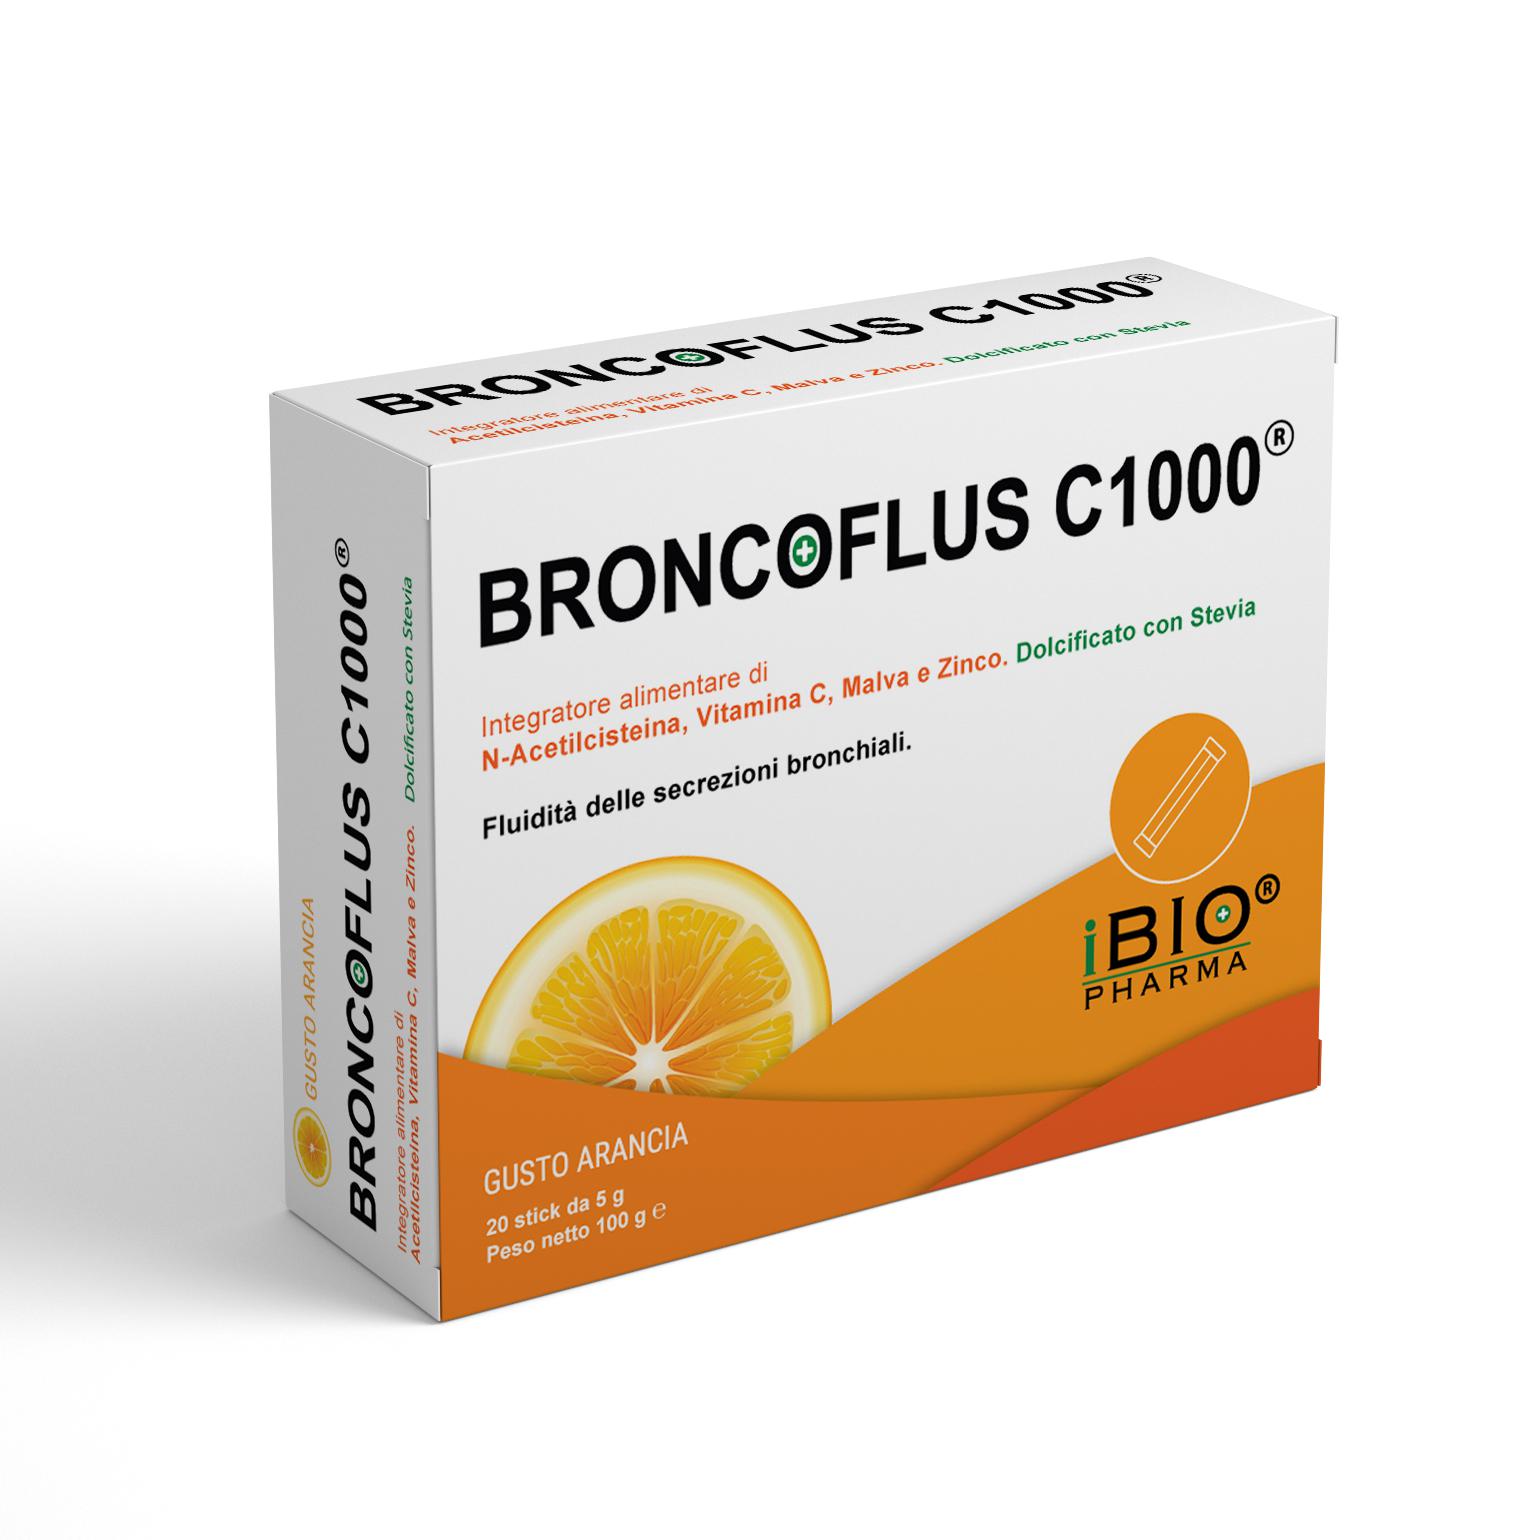 BRONCOFLUS C1000